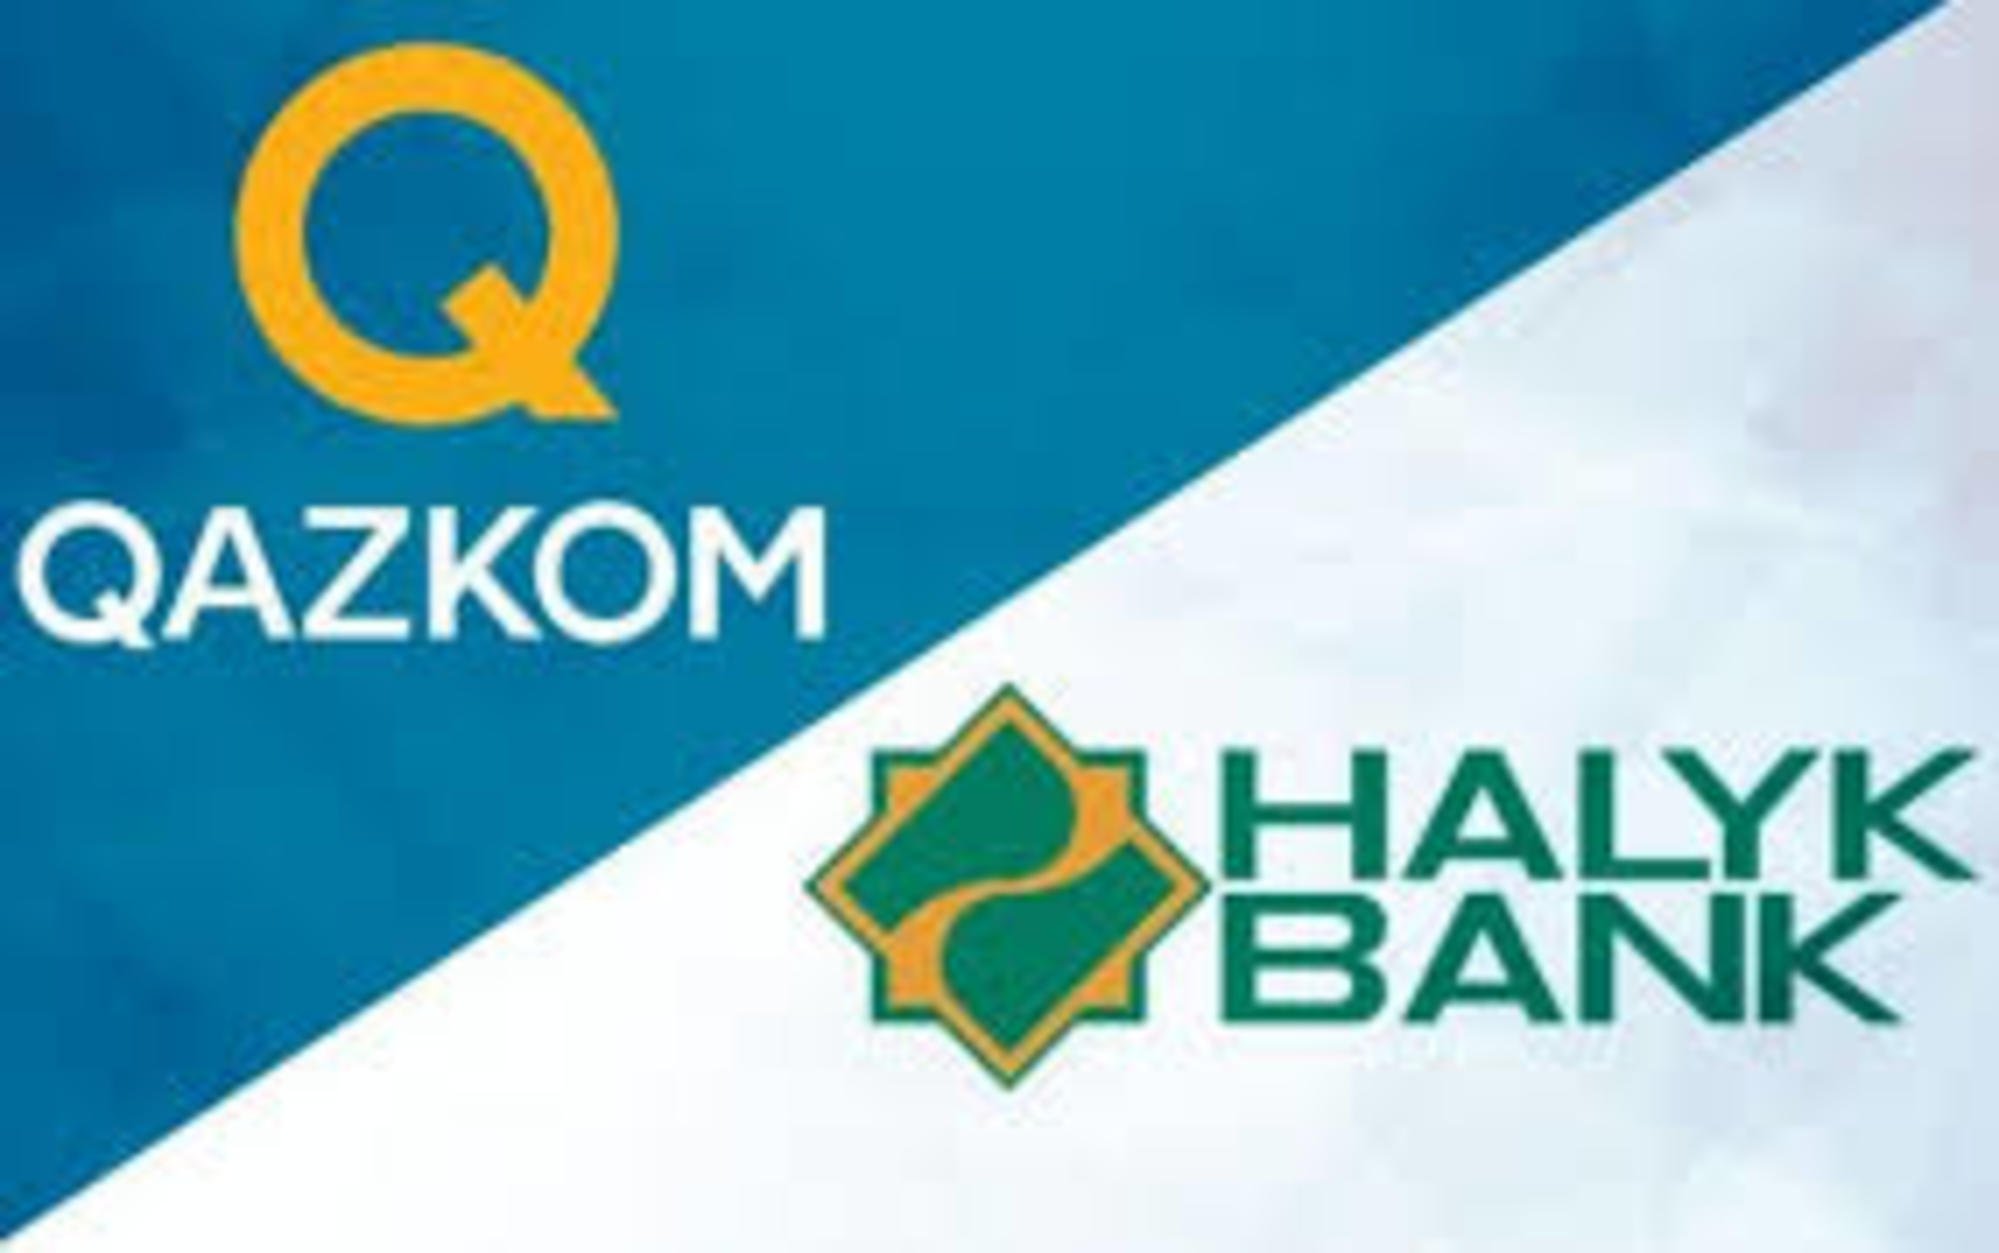 Завершено присоединение Qazkom к Halyk Bank